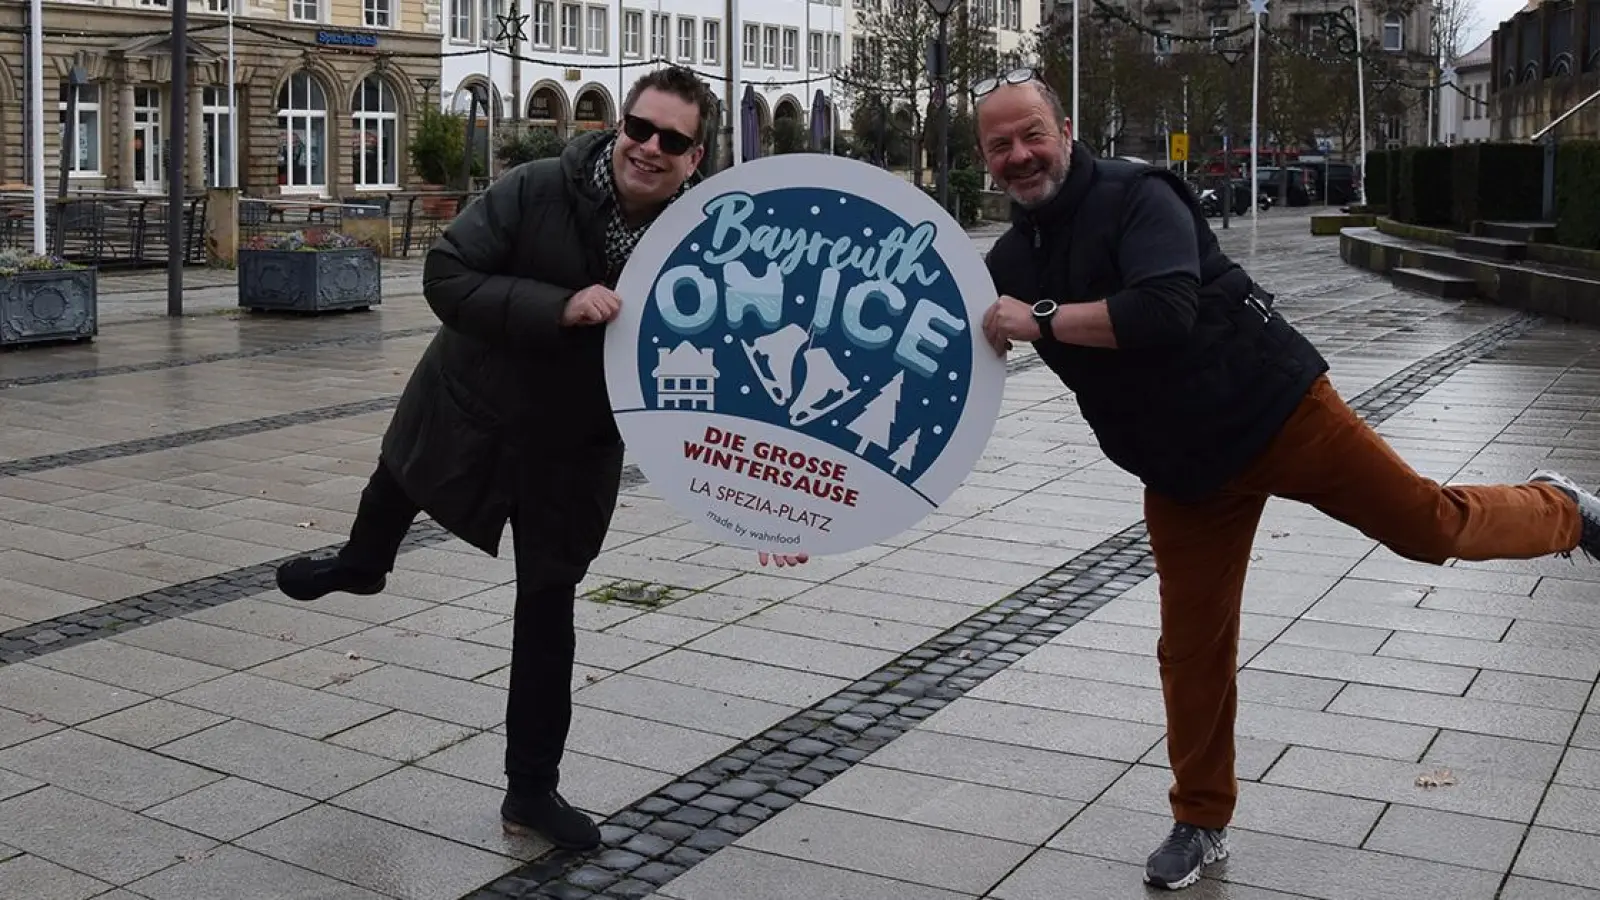 Axel Gottstein und Engin Gülyaprak freuen sich auf Bayreuth on Ice. (Foto: Lenkeit)